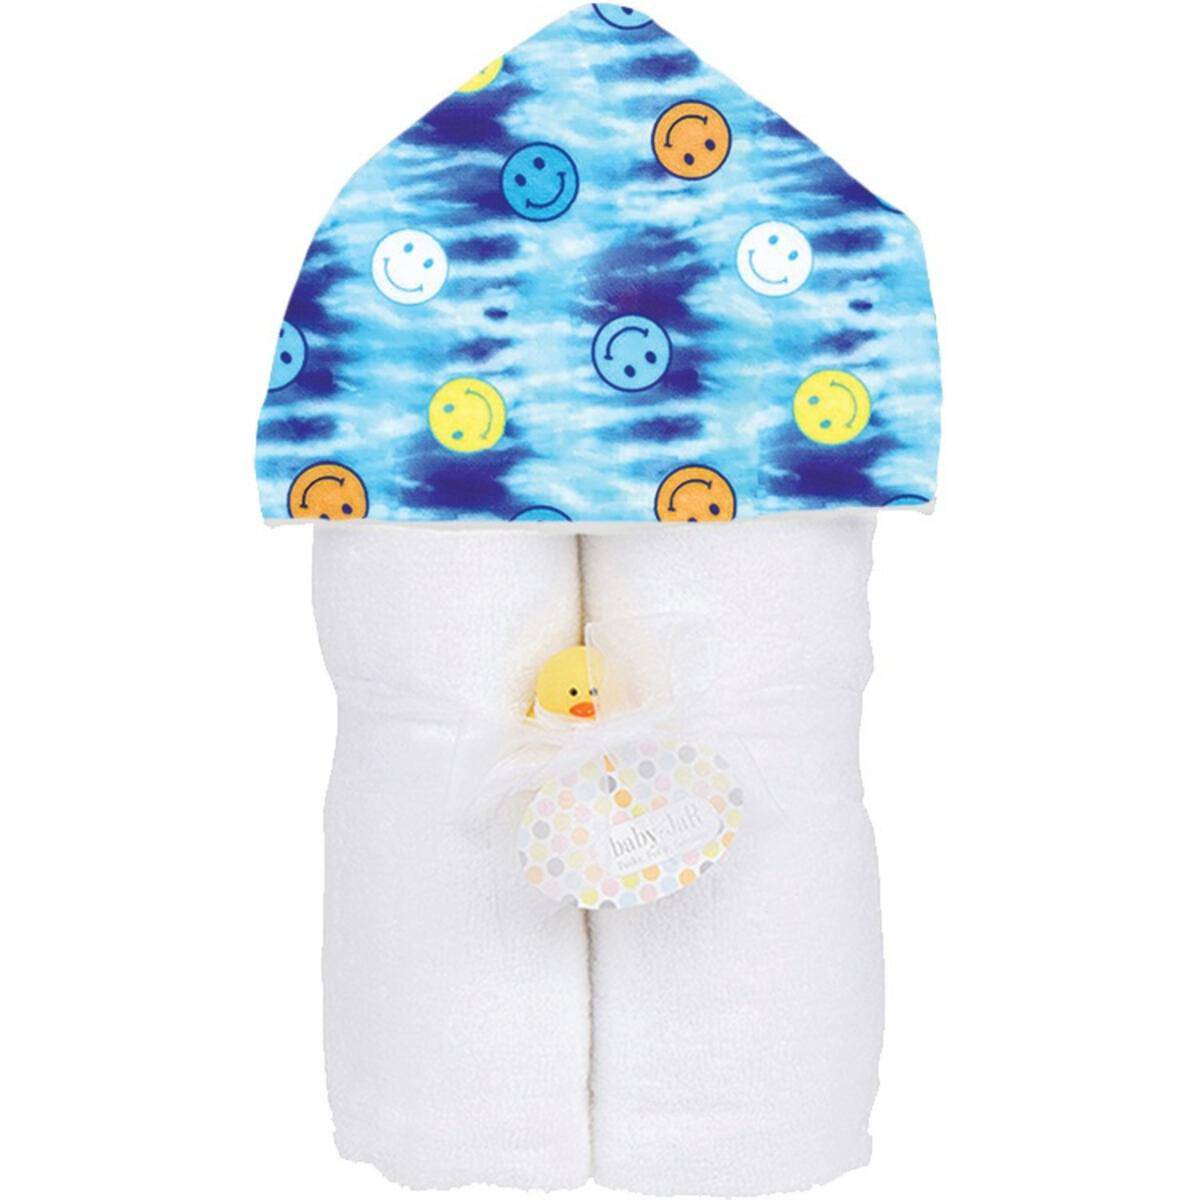 Blue Tie Dye Smiley Deluxe Hooded Towel - Twinkle Twinkle Little One